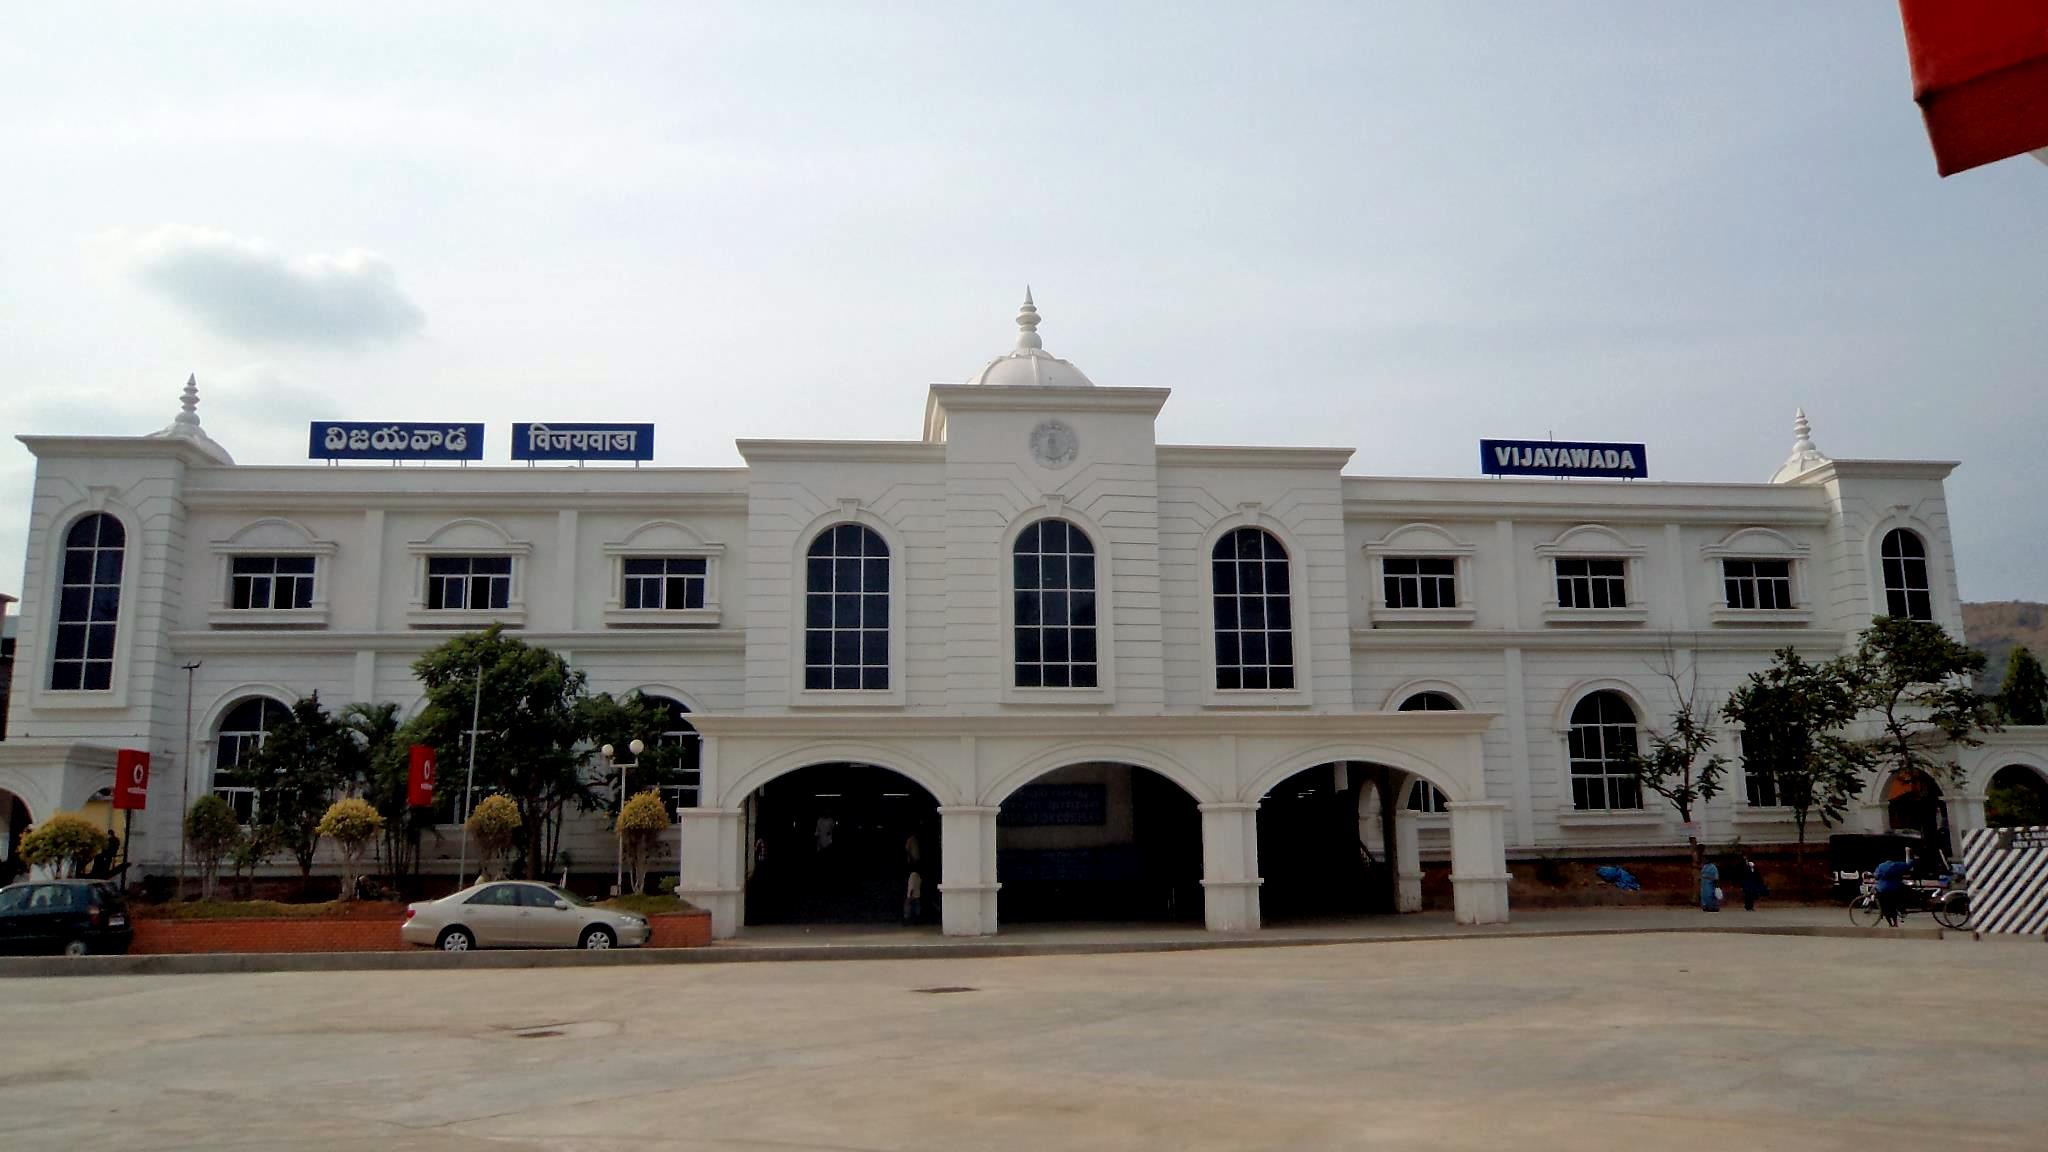 VijayawadaRailwayStation